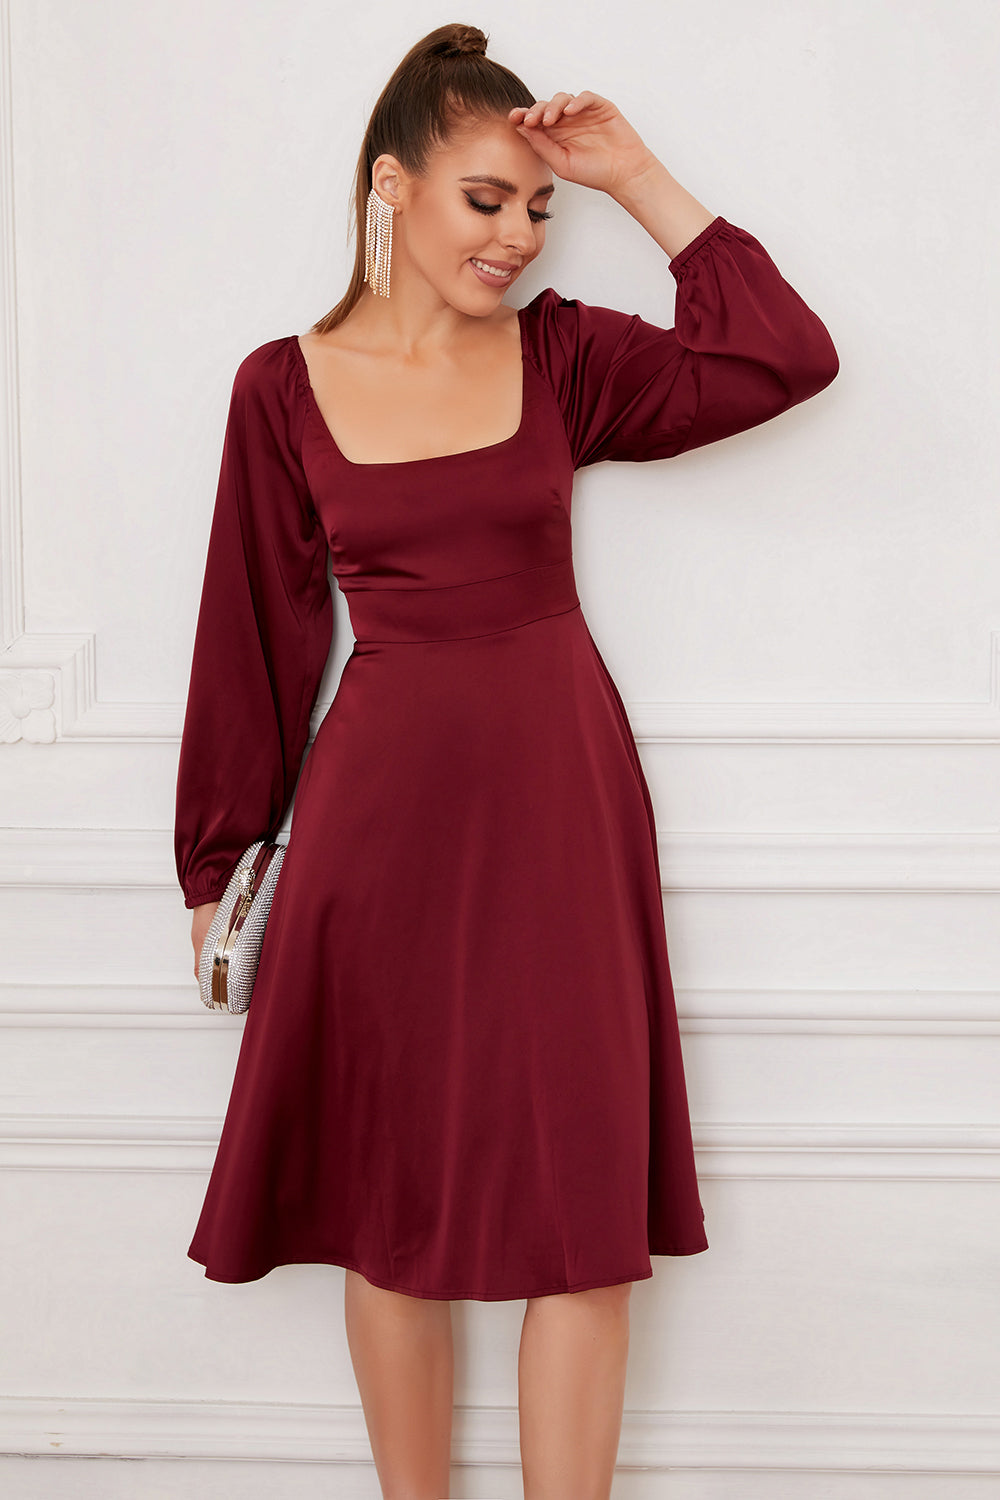 Burgundy Off the Shoulder Maroon Prom Dresses Long Sleeves Slit Formal –  Rjerdress